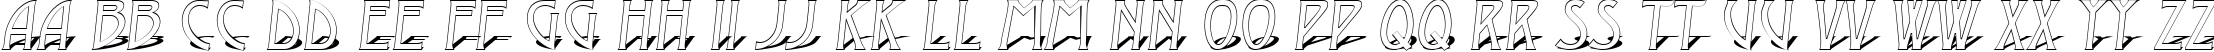 Пример написания английского алфавита шрифтом a_ModernoOtl3DSh